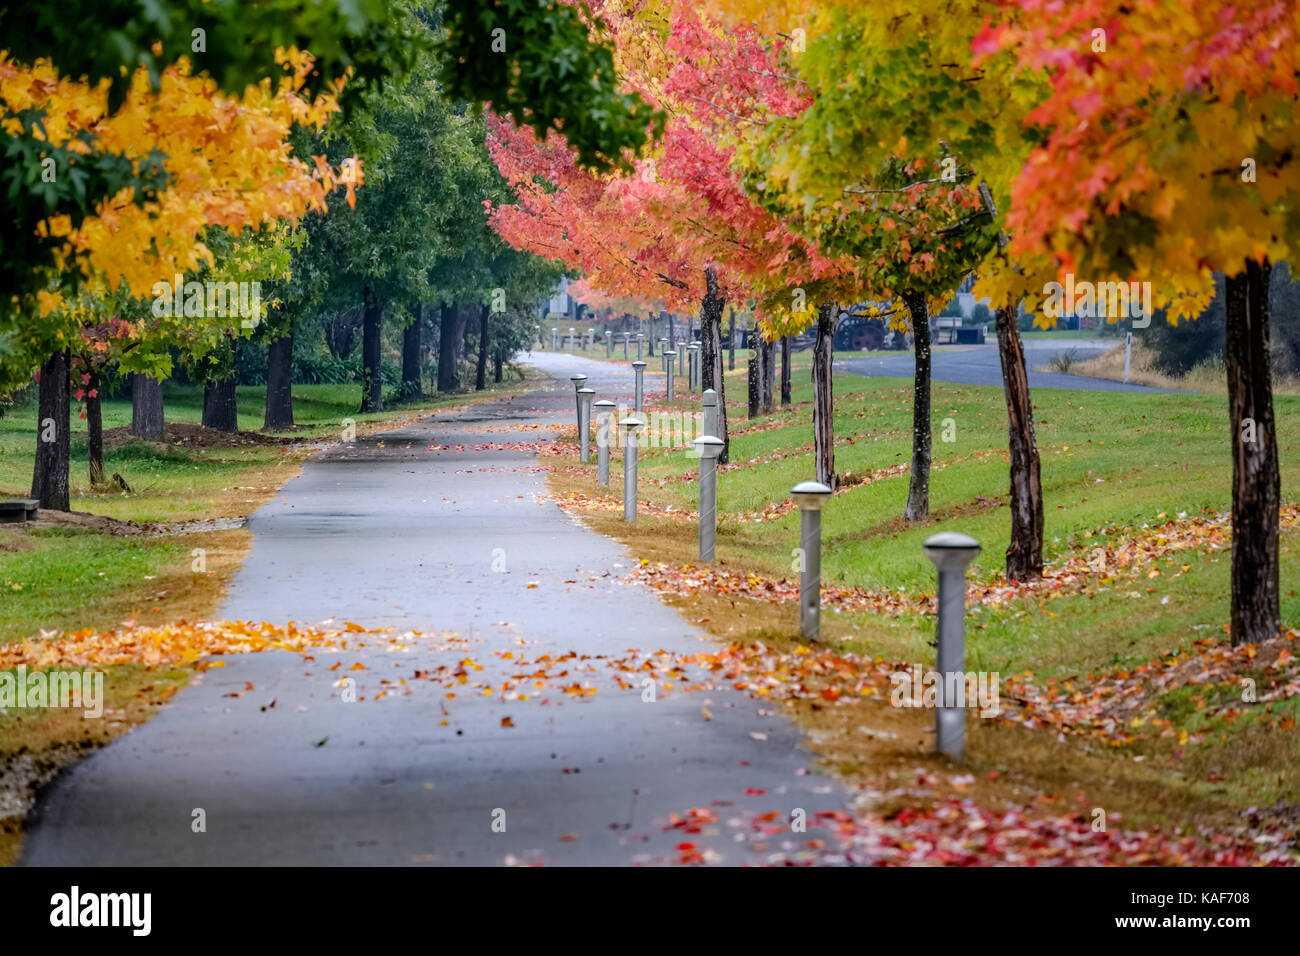 Une piste de randonnée et de vélo serpente à travers de magnifiques feuilles d'automne colorées dans un parc public de Bright, Australie. Banque D'Images